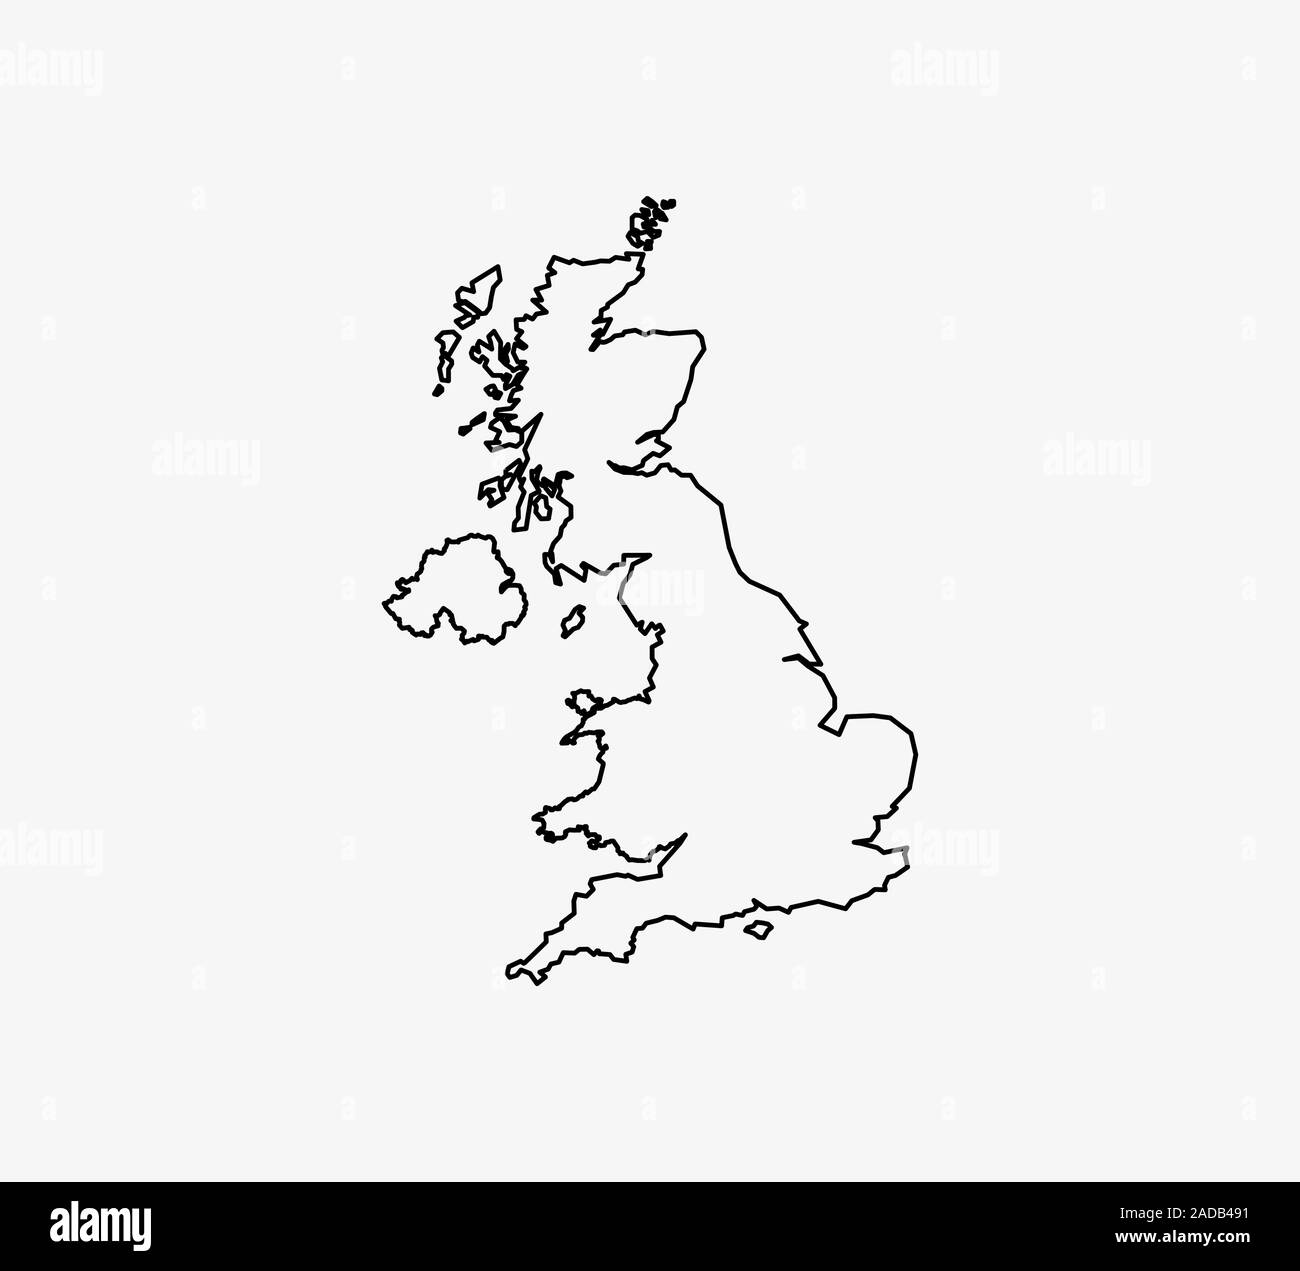 Royaume-uni carte sur fond blanc. Vector illustration. Contour. Illustration de Vecteur